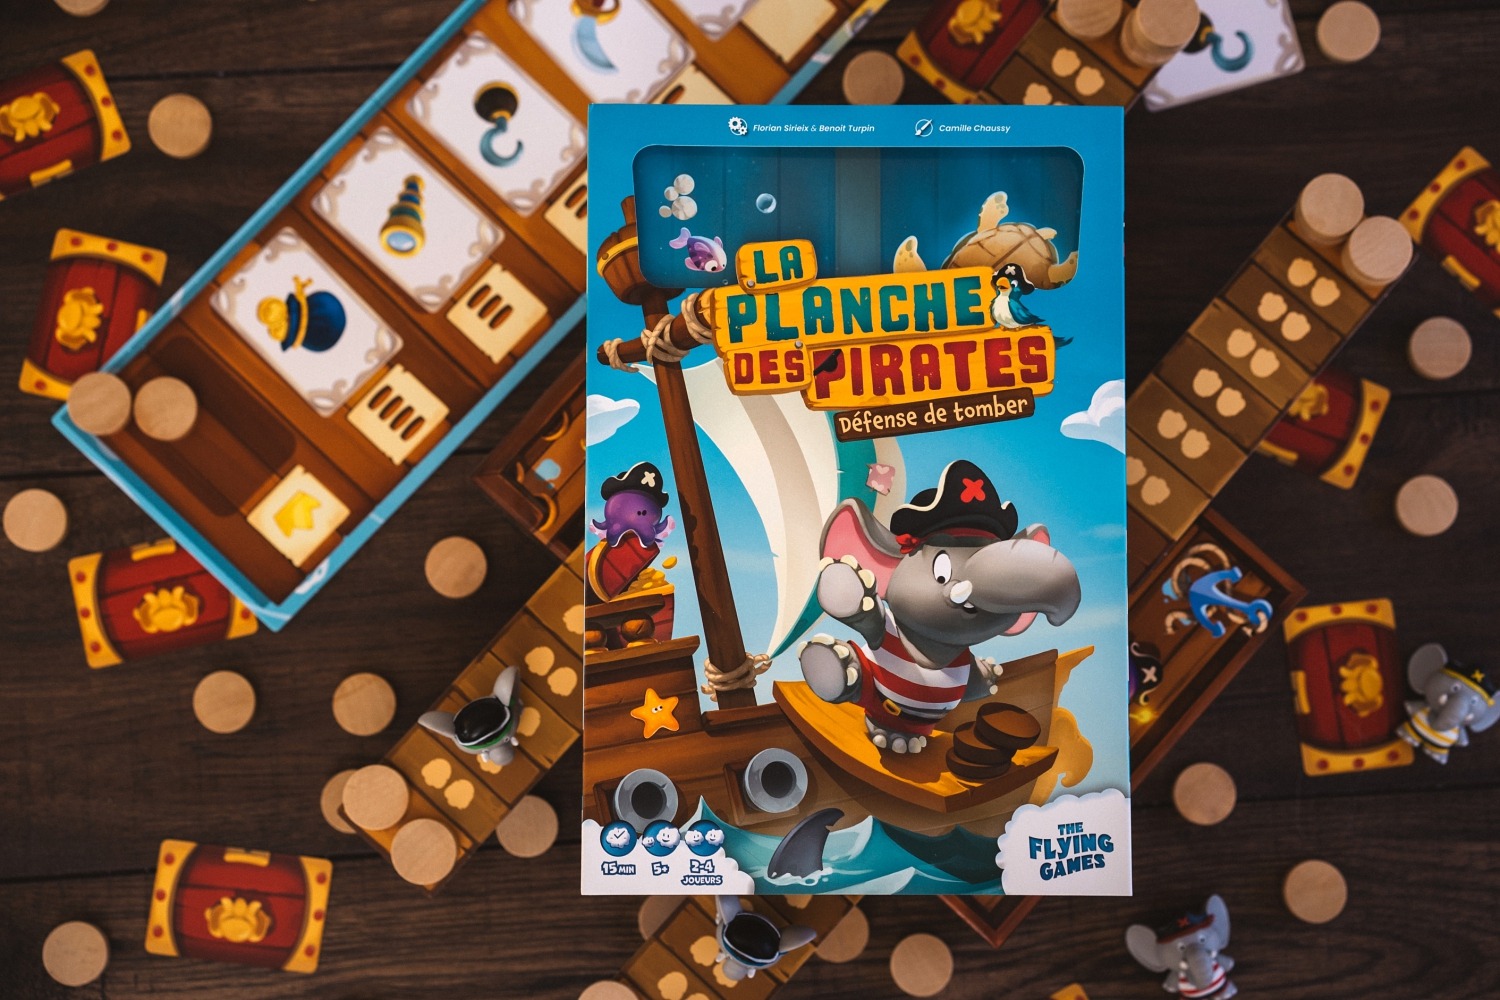 La planche des pirates the flying games jeu de société 